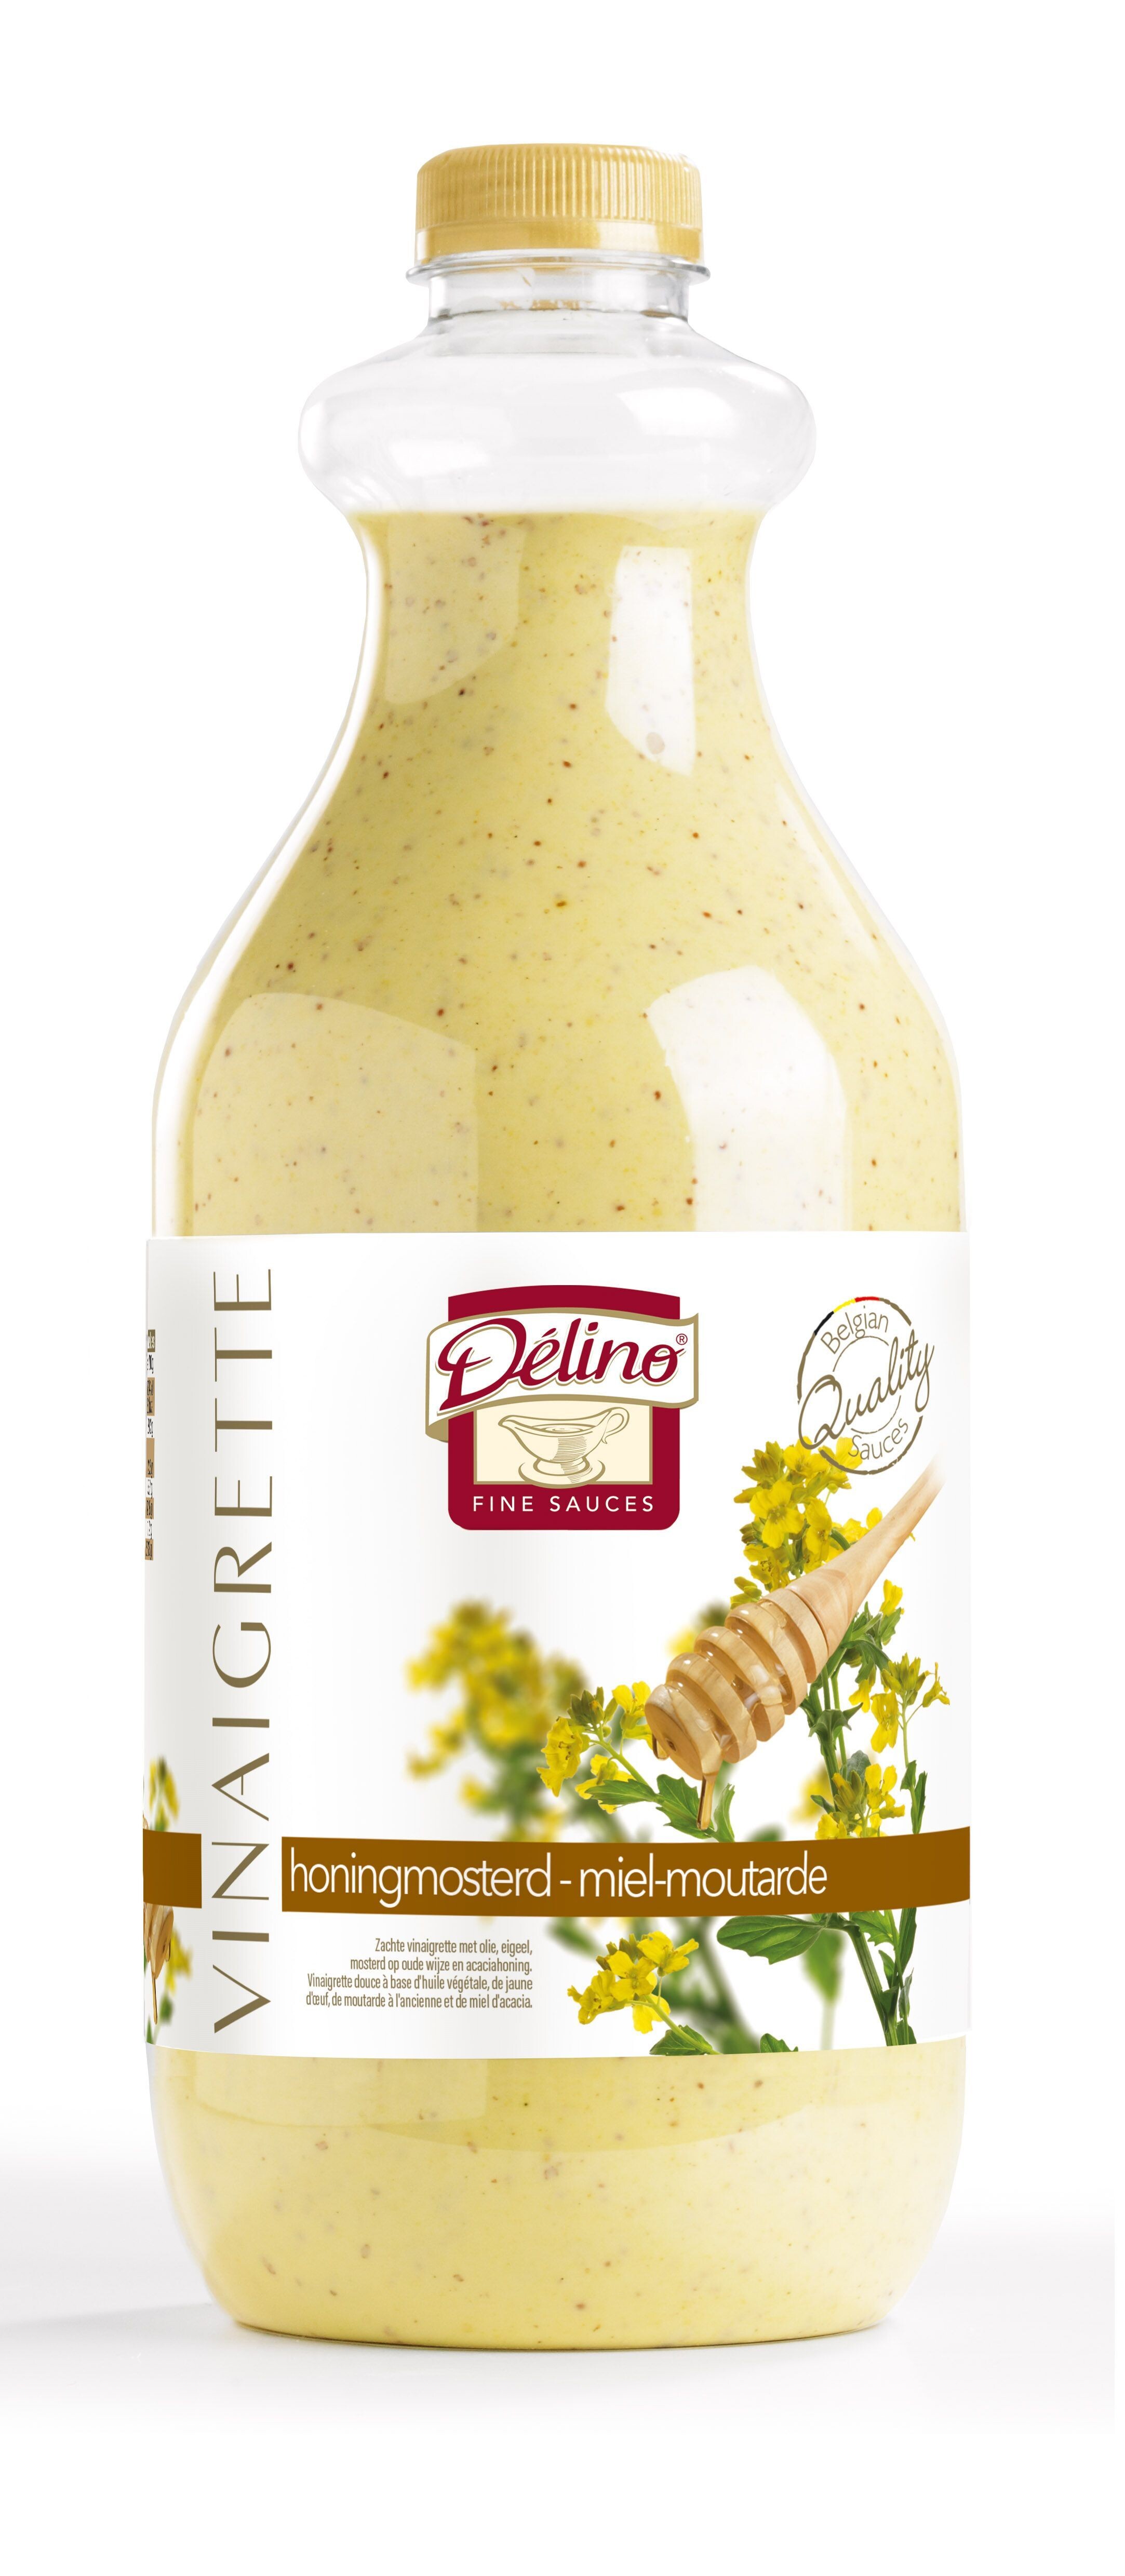 Delino Vinaigrette Honey & Mustard 2L Pet bottle